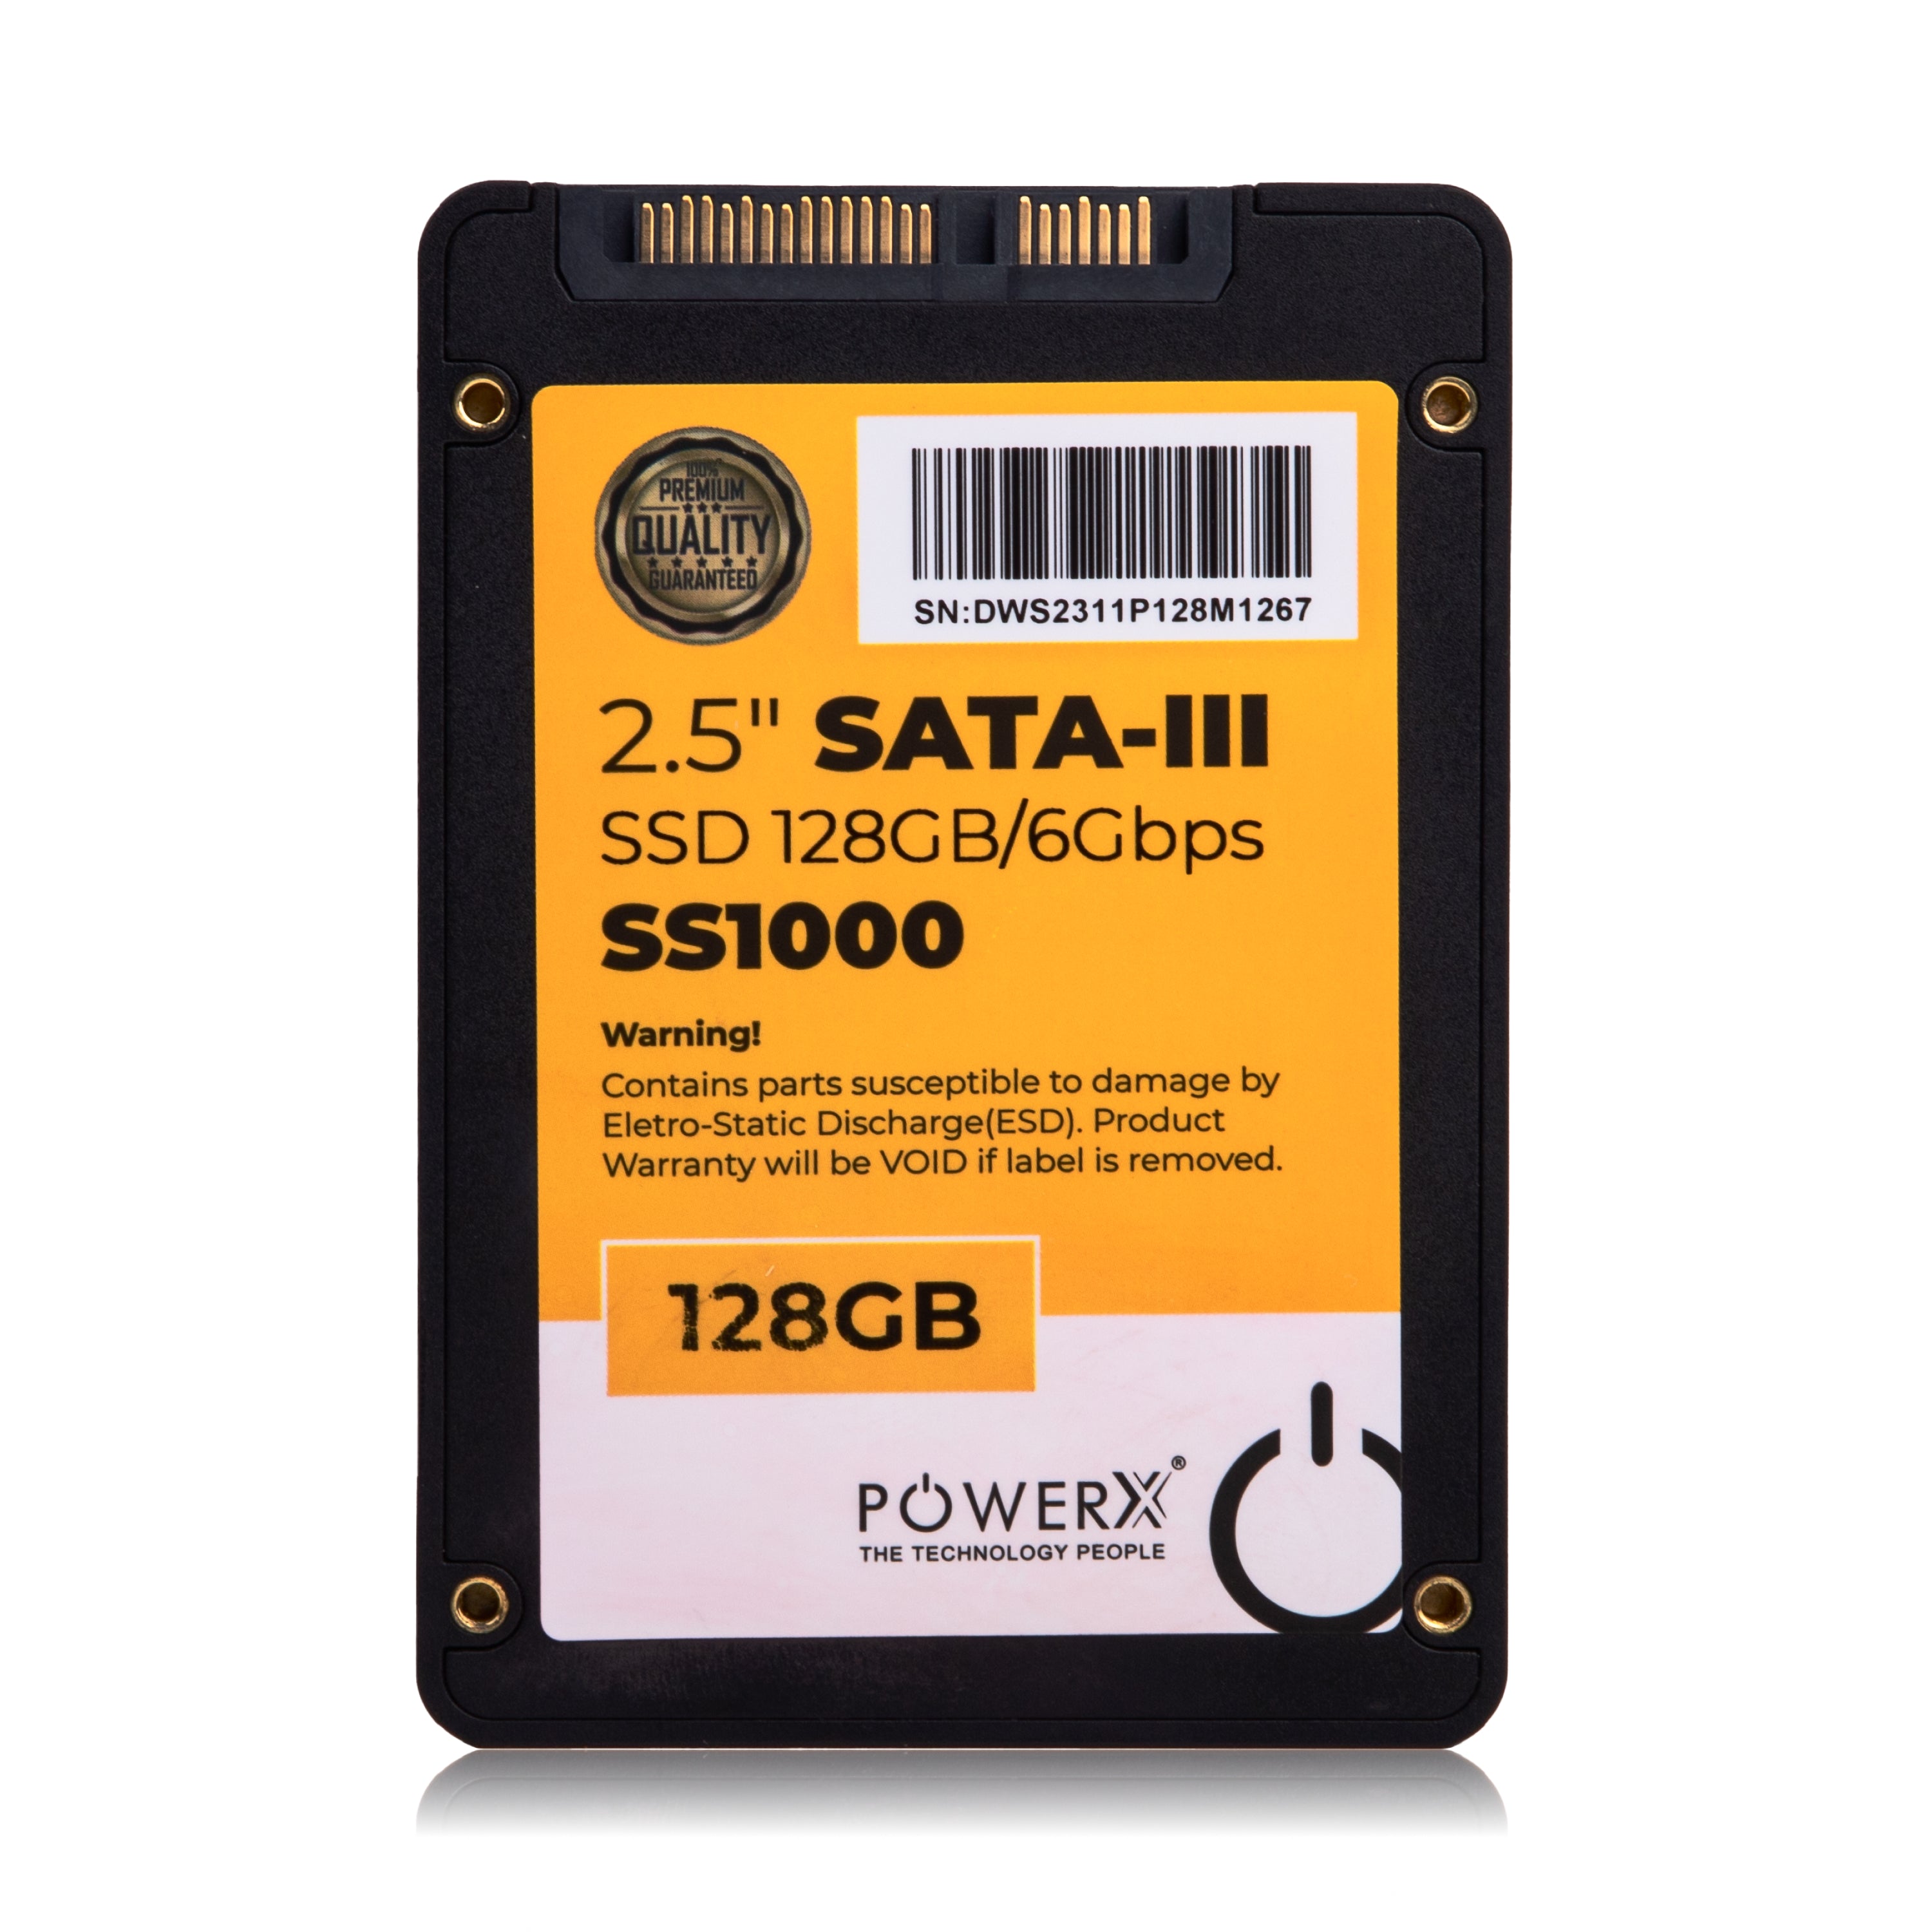 2.5" SATA 3.0 SSD 128GB